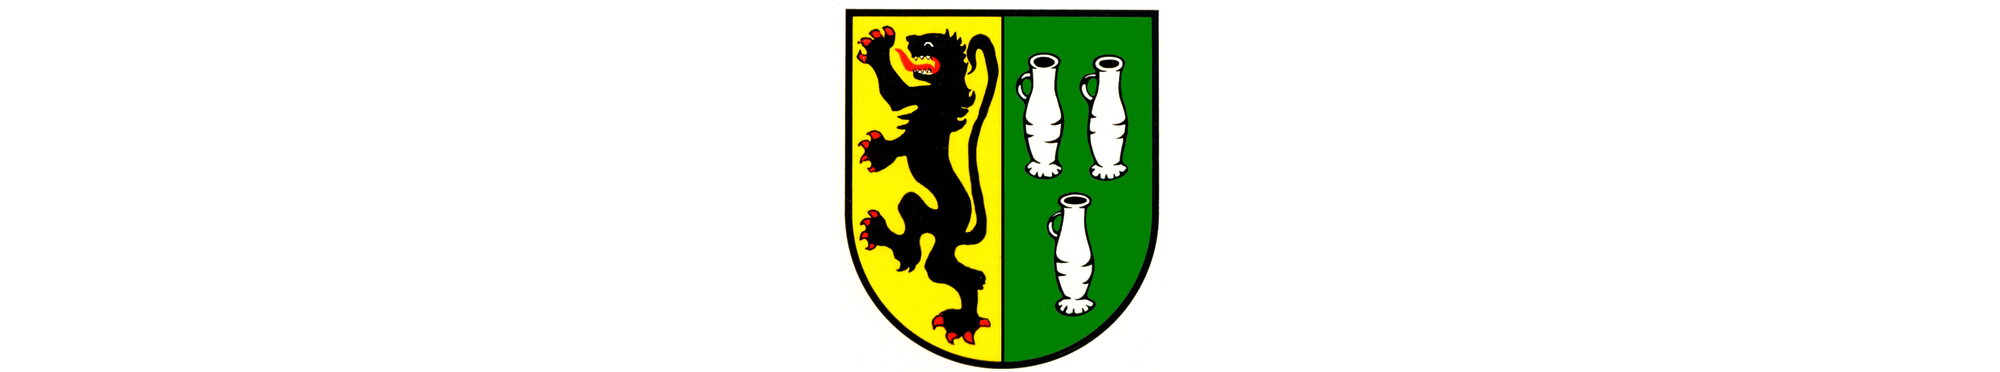 Wappen der Gemeinde Langerwehe